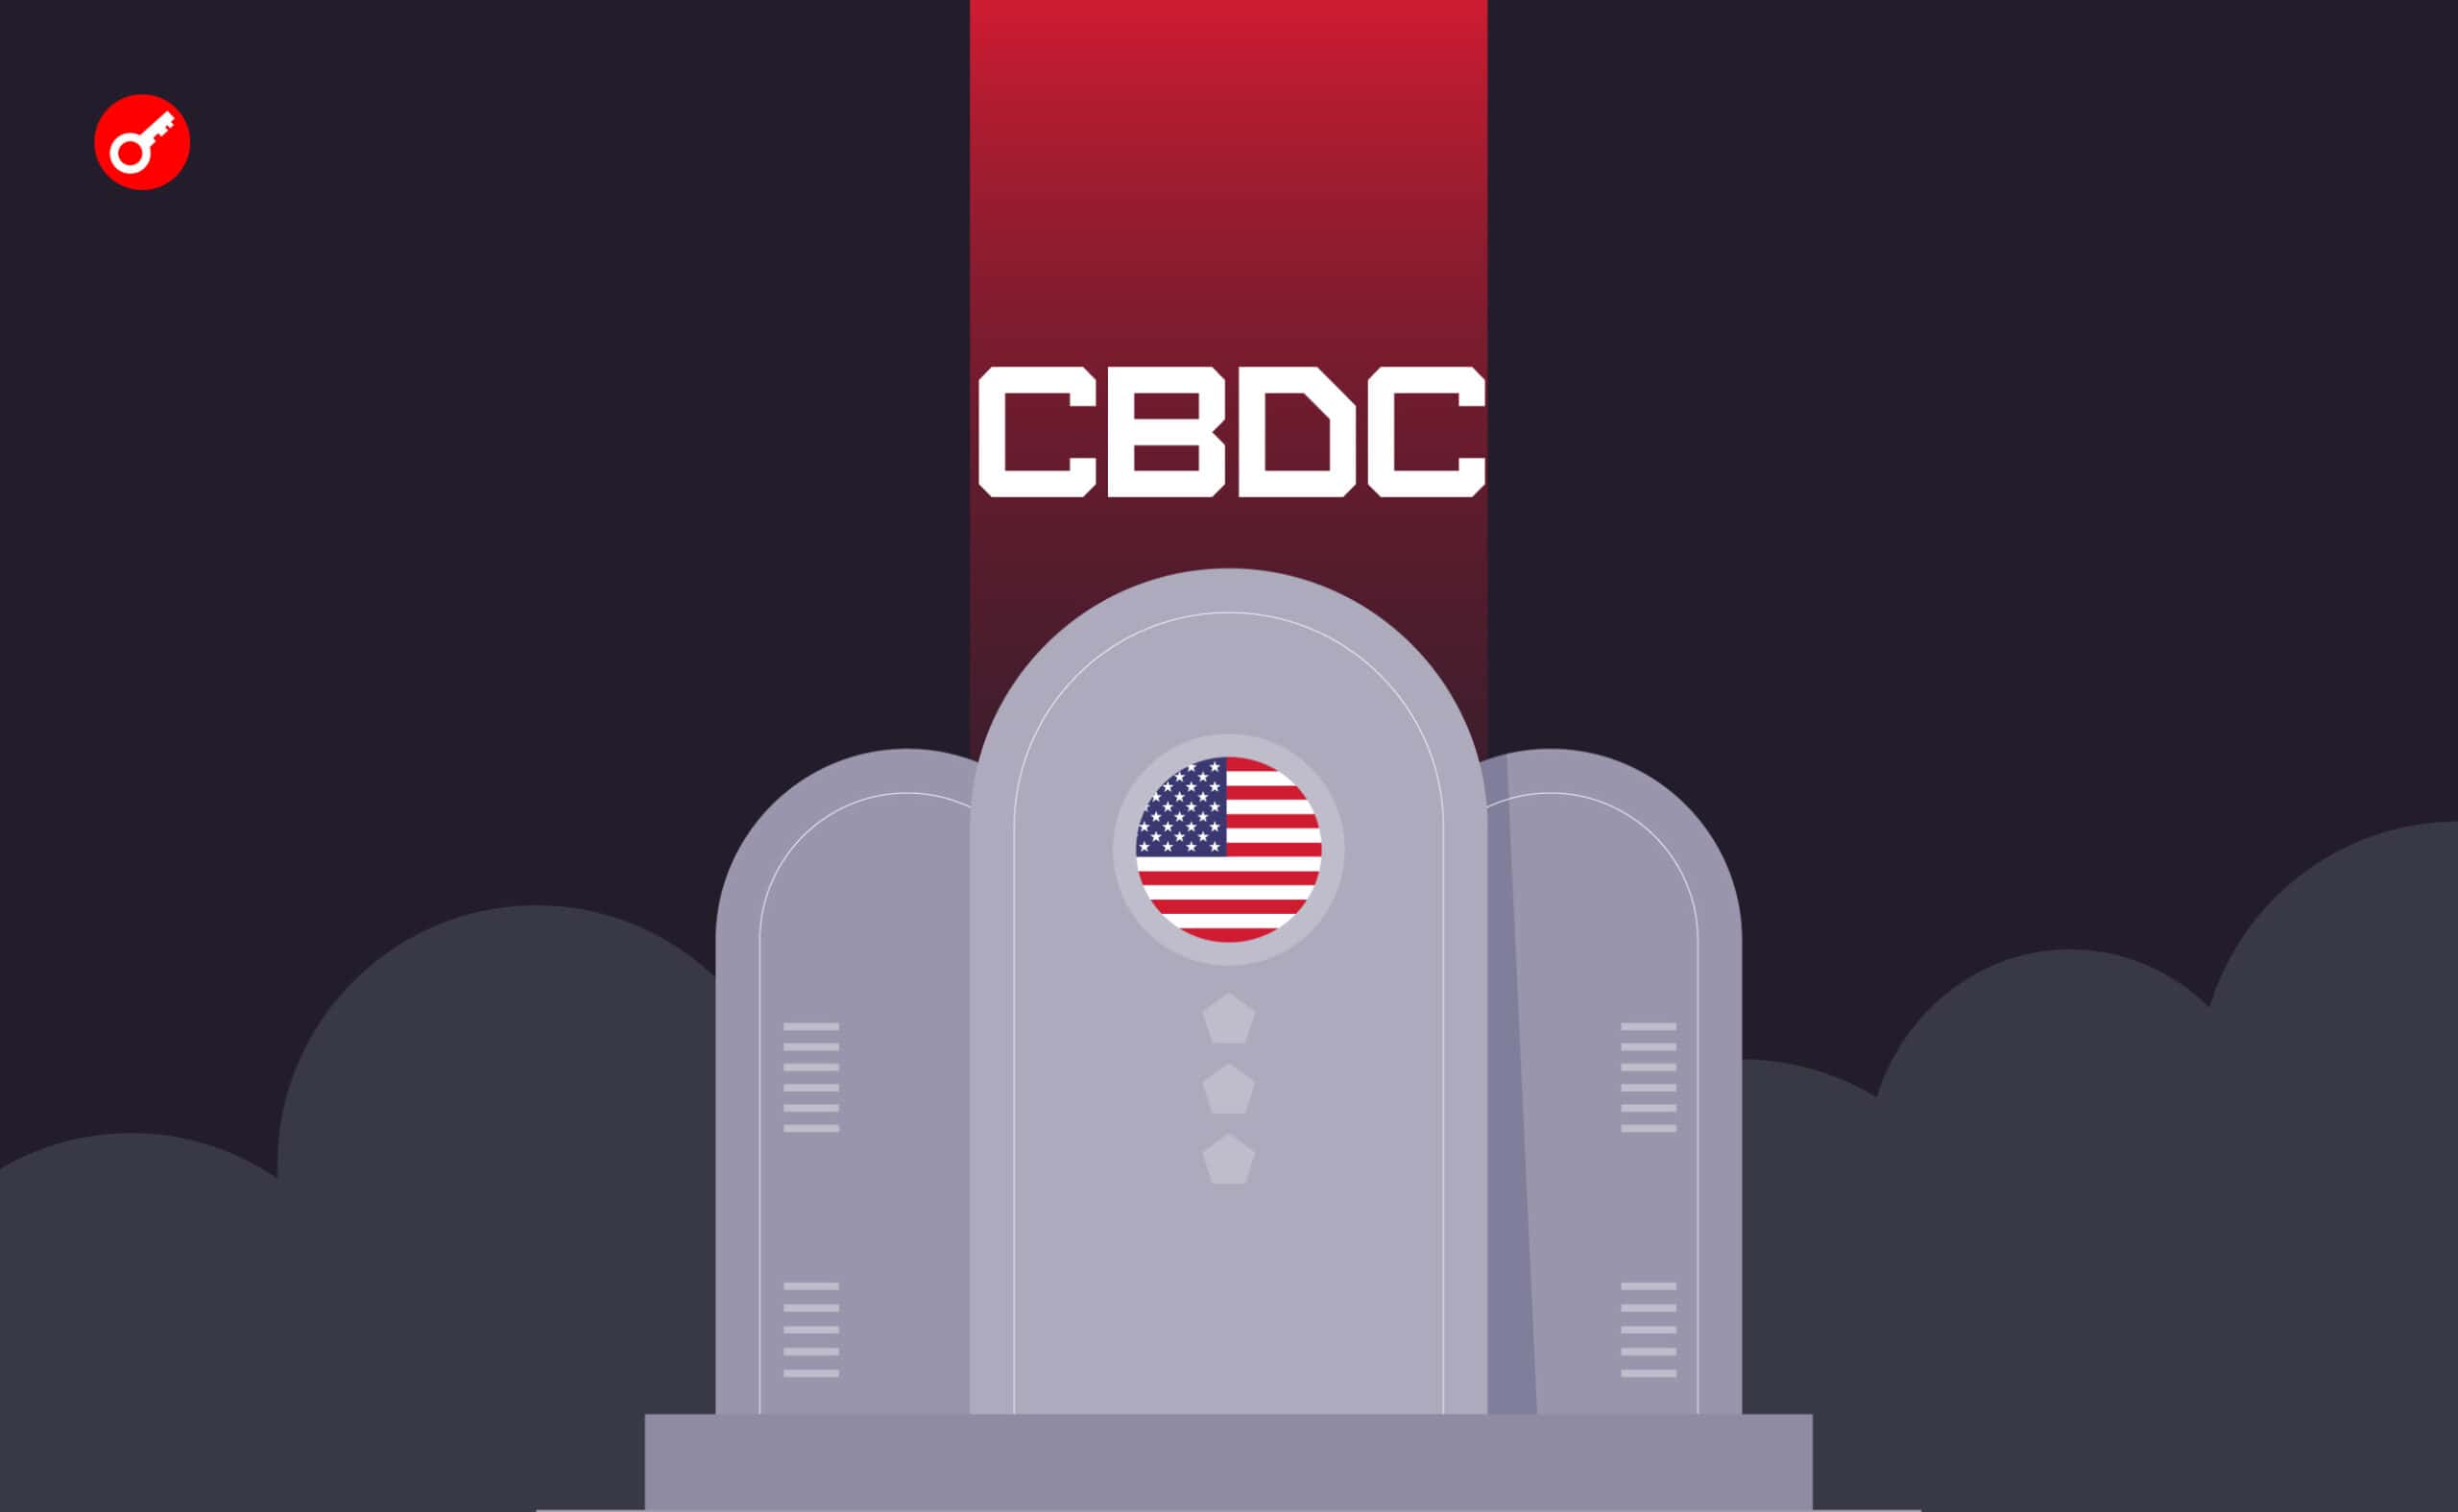 Кандидат у президенти США назвав CBDC «могилою американської свободи». Головний колаж новини.